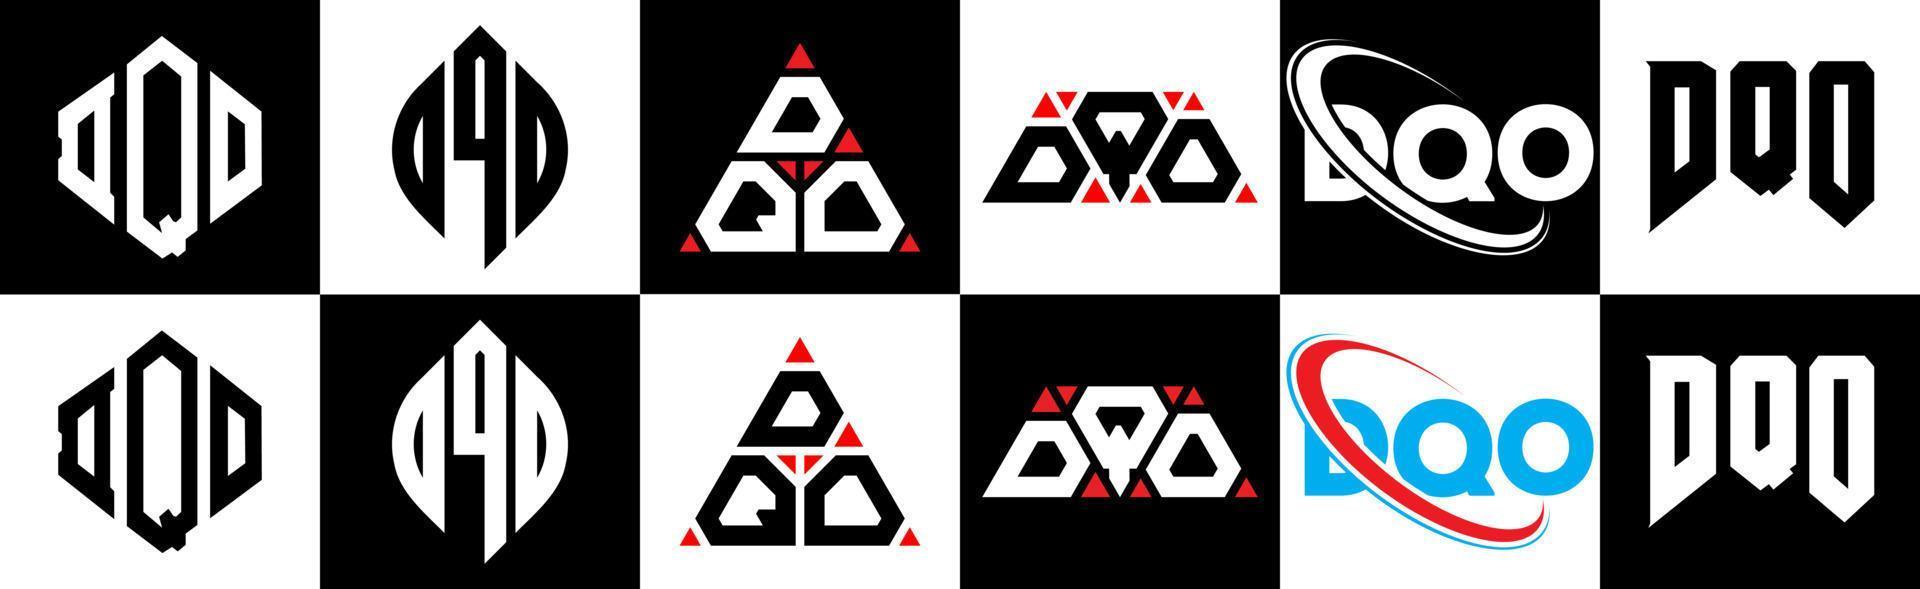 création de logo de lettre dqo en six styles. dqo polygone, cercle, triangle, hexagone, style plat et simple avec logo de lettre de variation de couleur noir et blanc dans un plan de travail. dqo logo minimaliste et classique vecteur